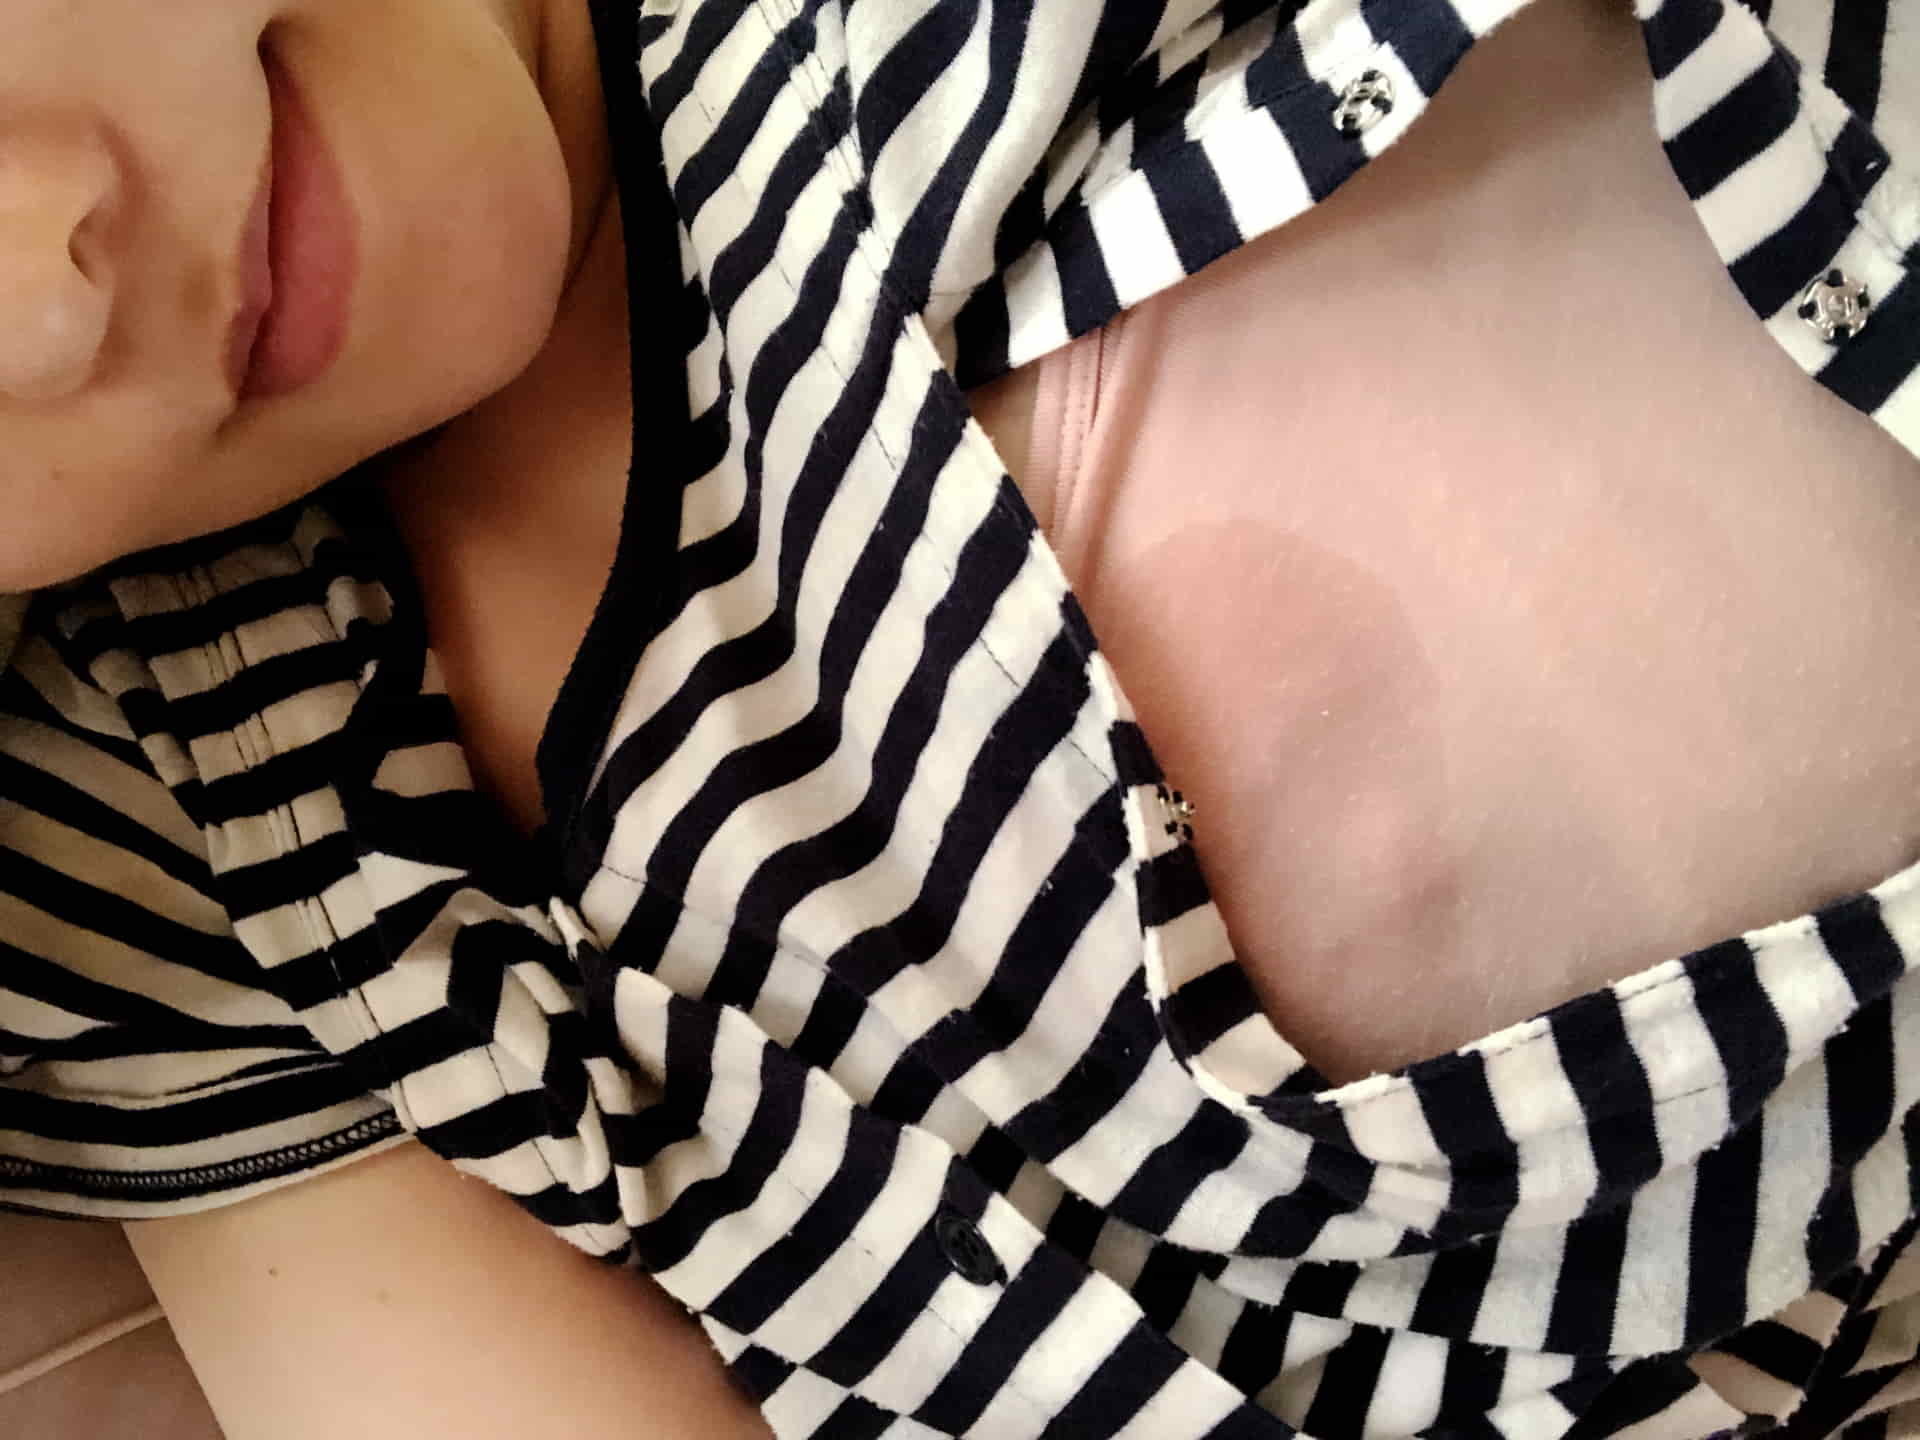 온라인에서 수천 명이 팔로우하는 Onlyfans 최고의 가슴 여신 [오키타 안리]는 큰 가슴과 큰 엉덩이의 개인 사진을 가지고 있습니다